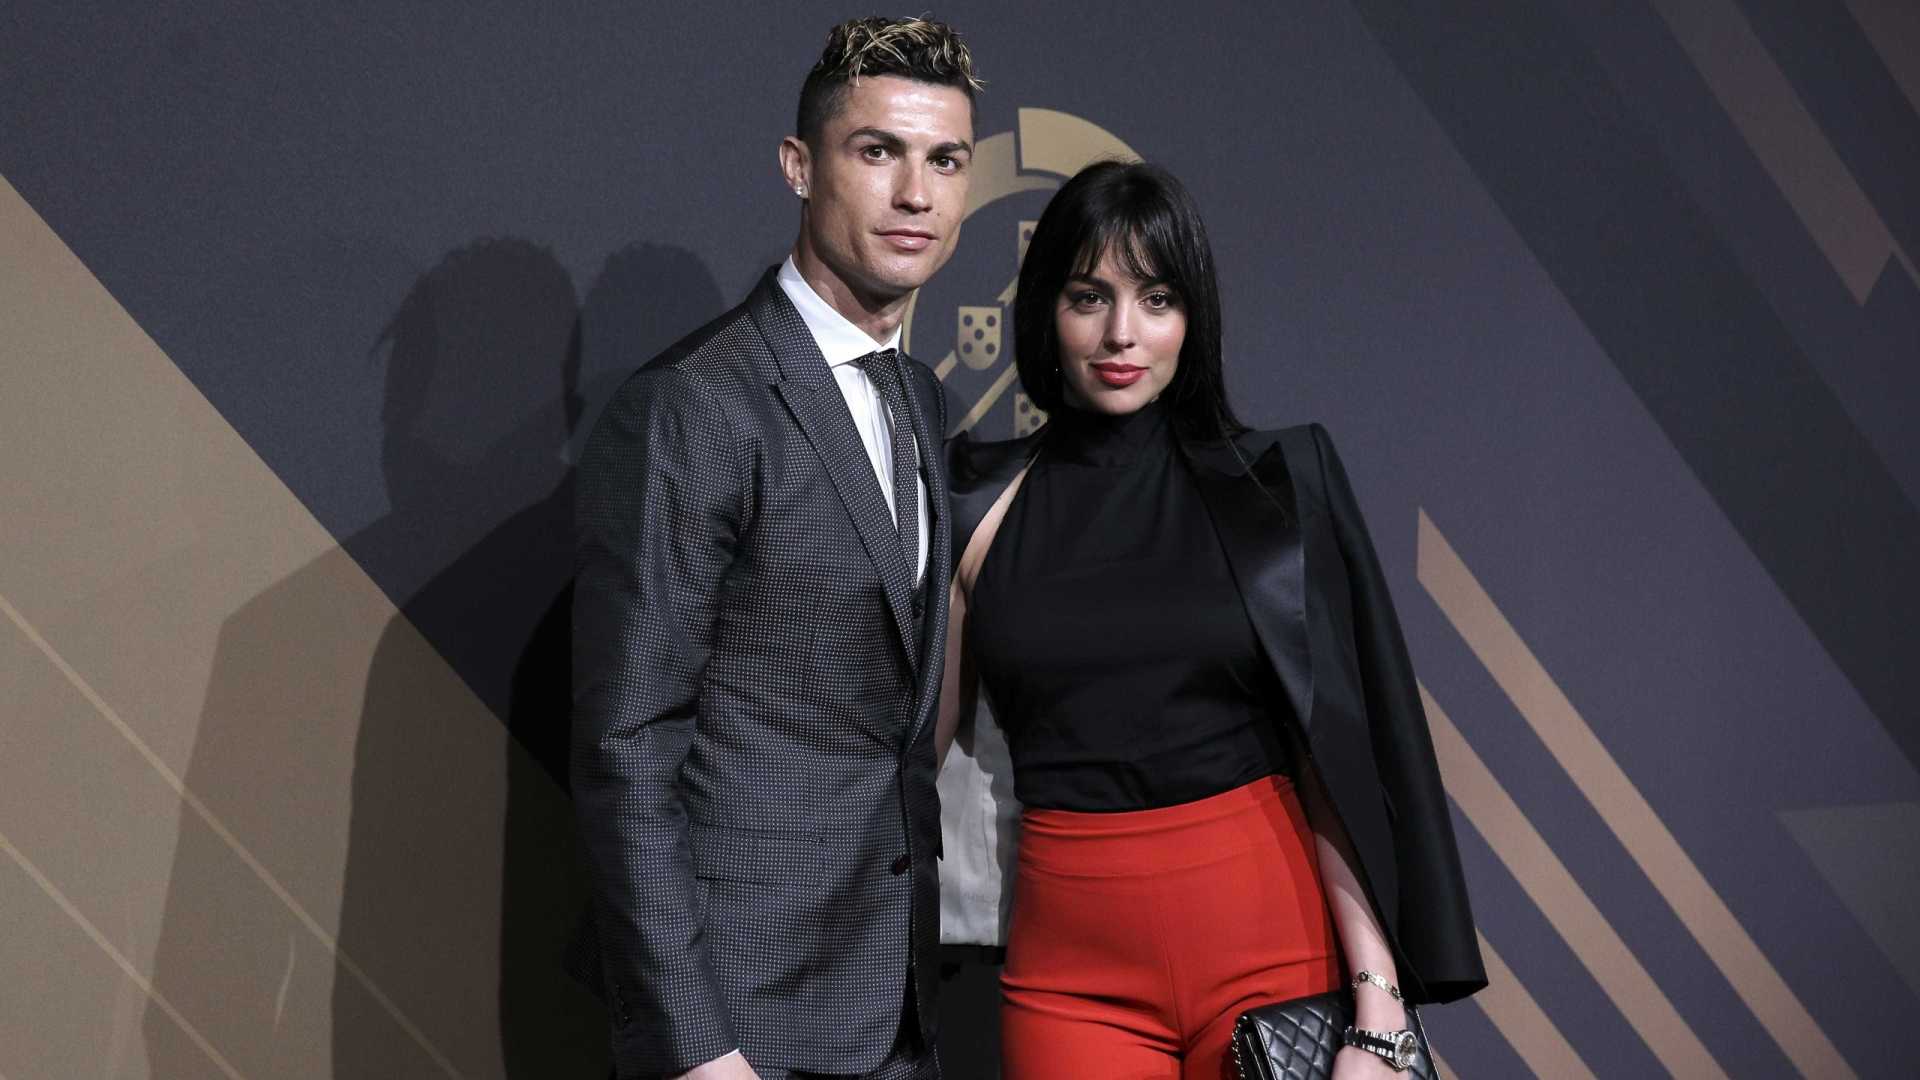 Cristiano Ronaldo en vacances avec sa chérie Georgina Rodriguez : elle partage un cliché ultra sexy